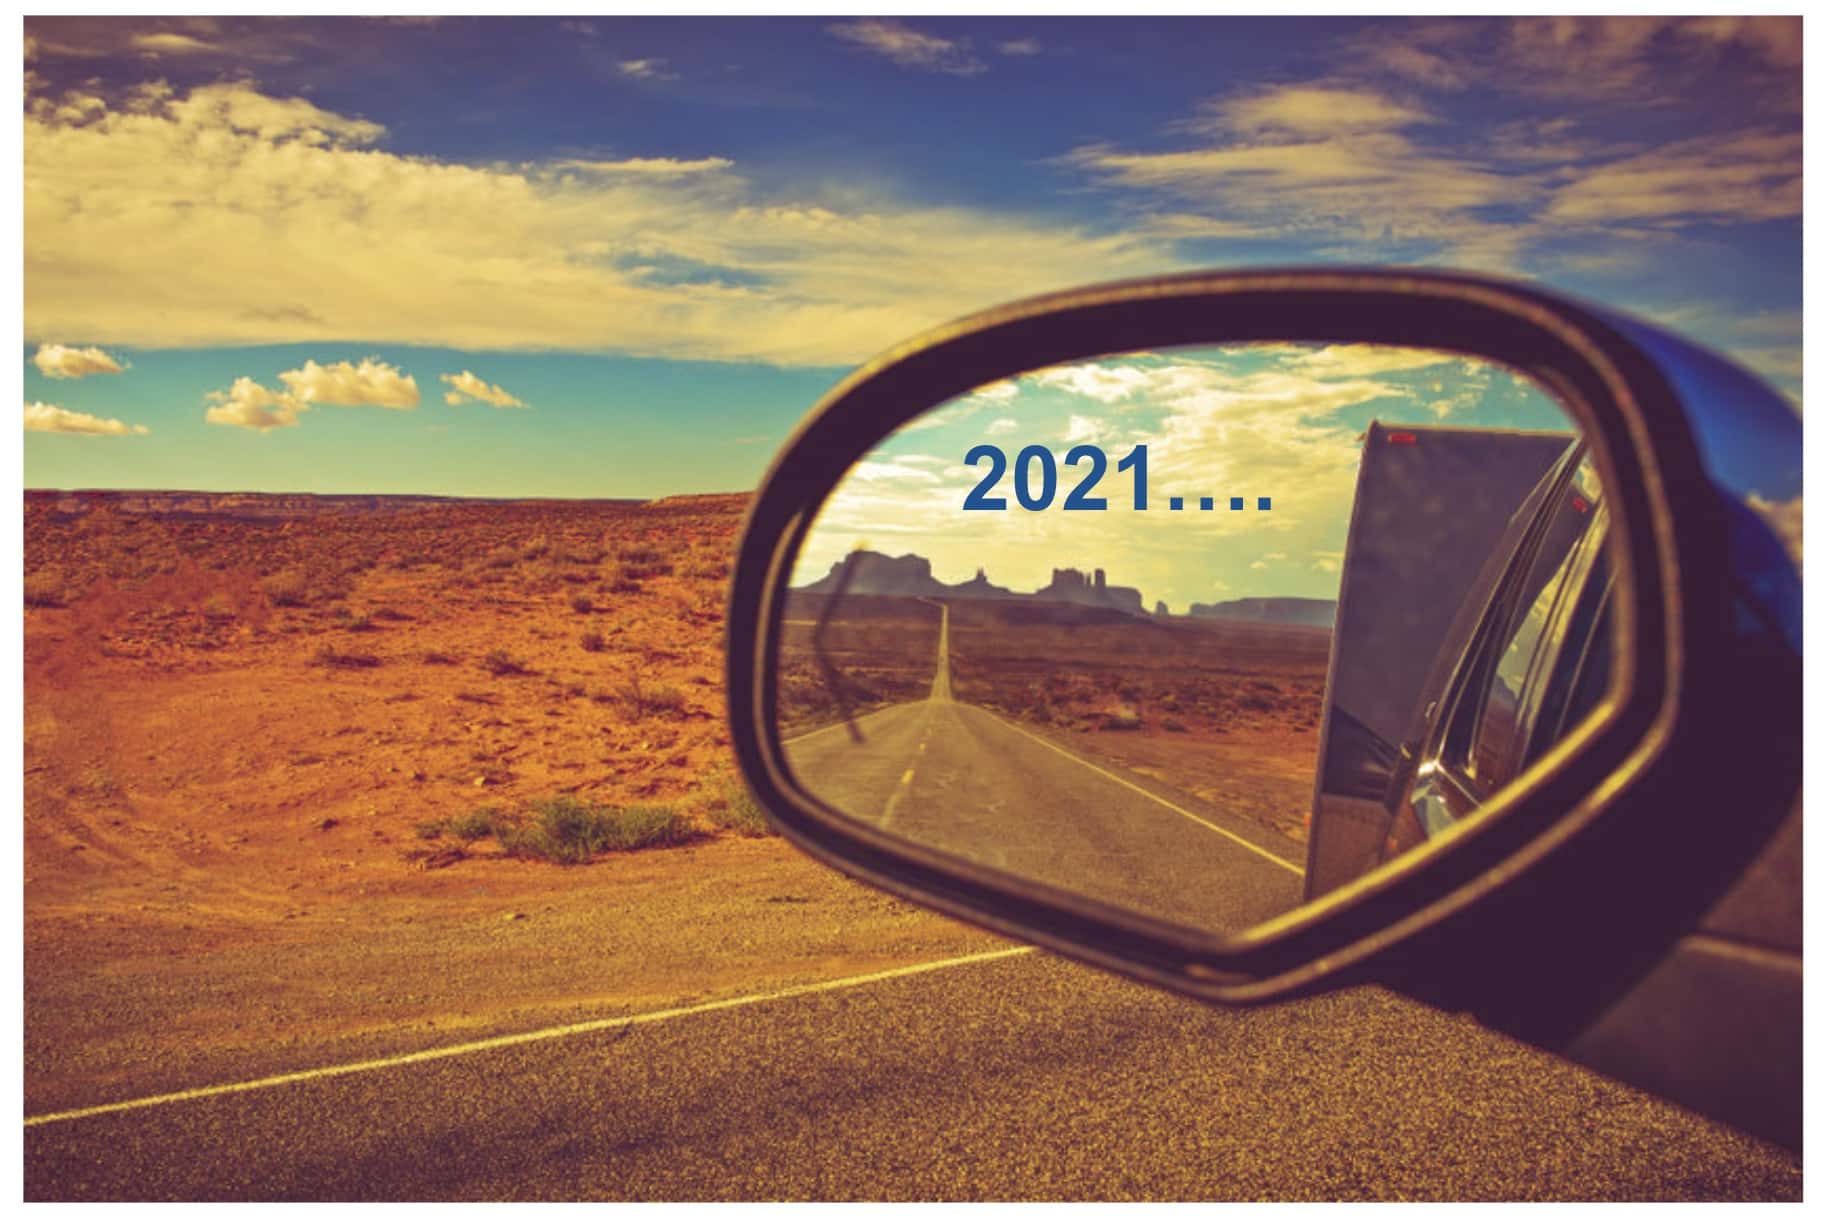 OpenBOM – Looking Back in 2021